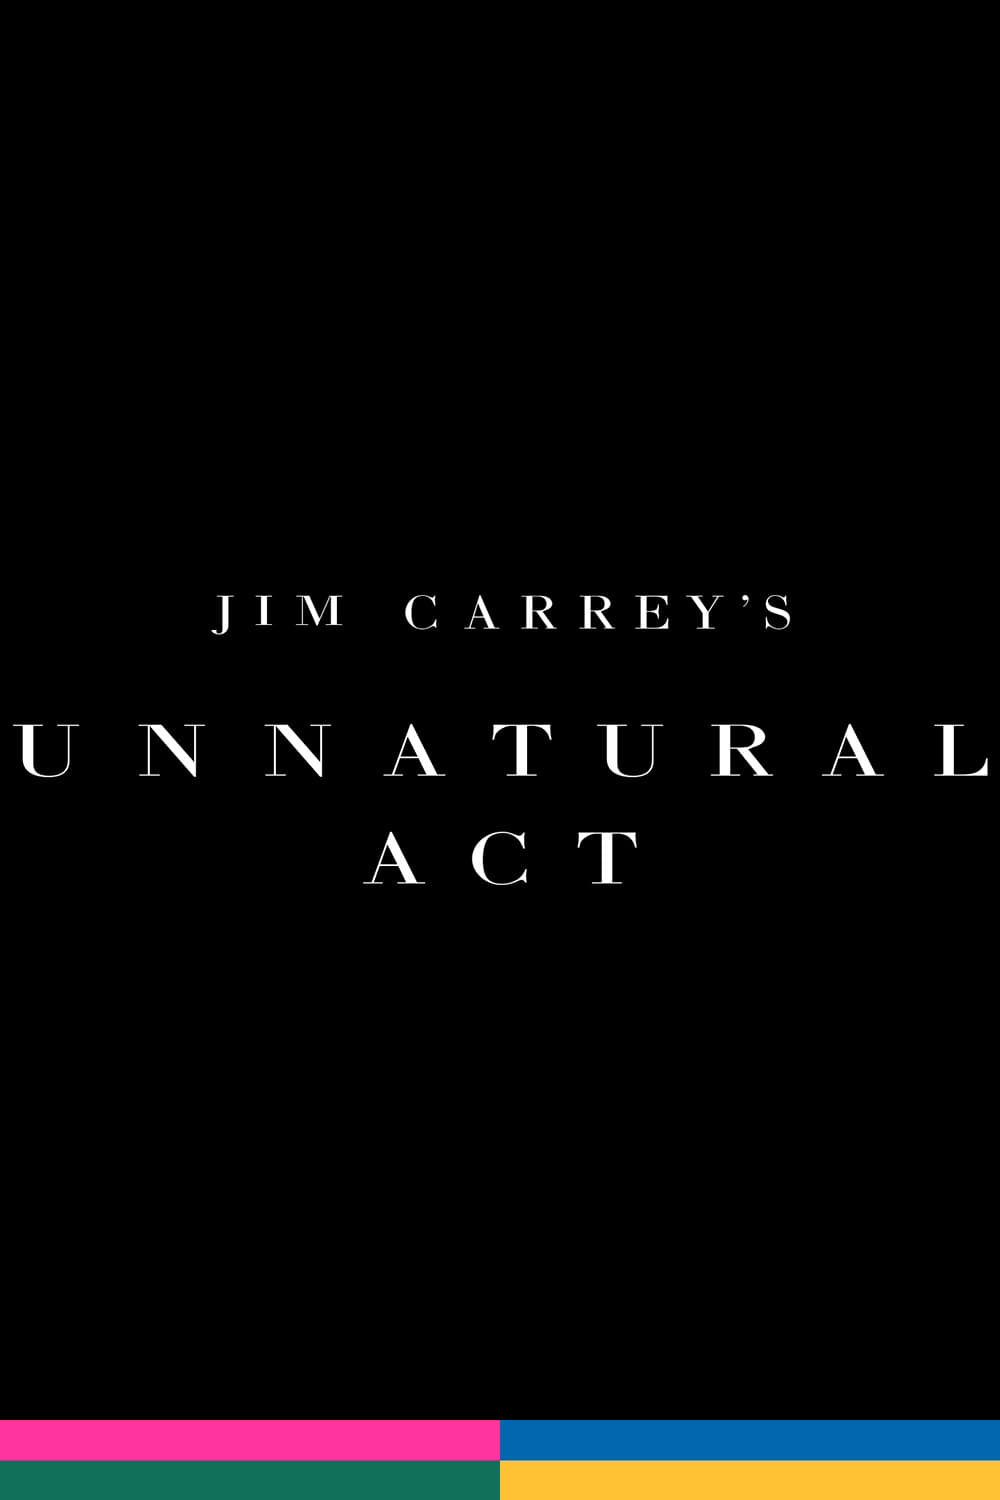 Jim Carrey : Unnatural Act streaming